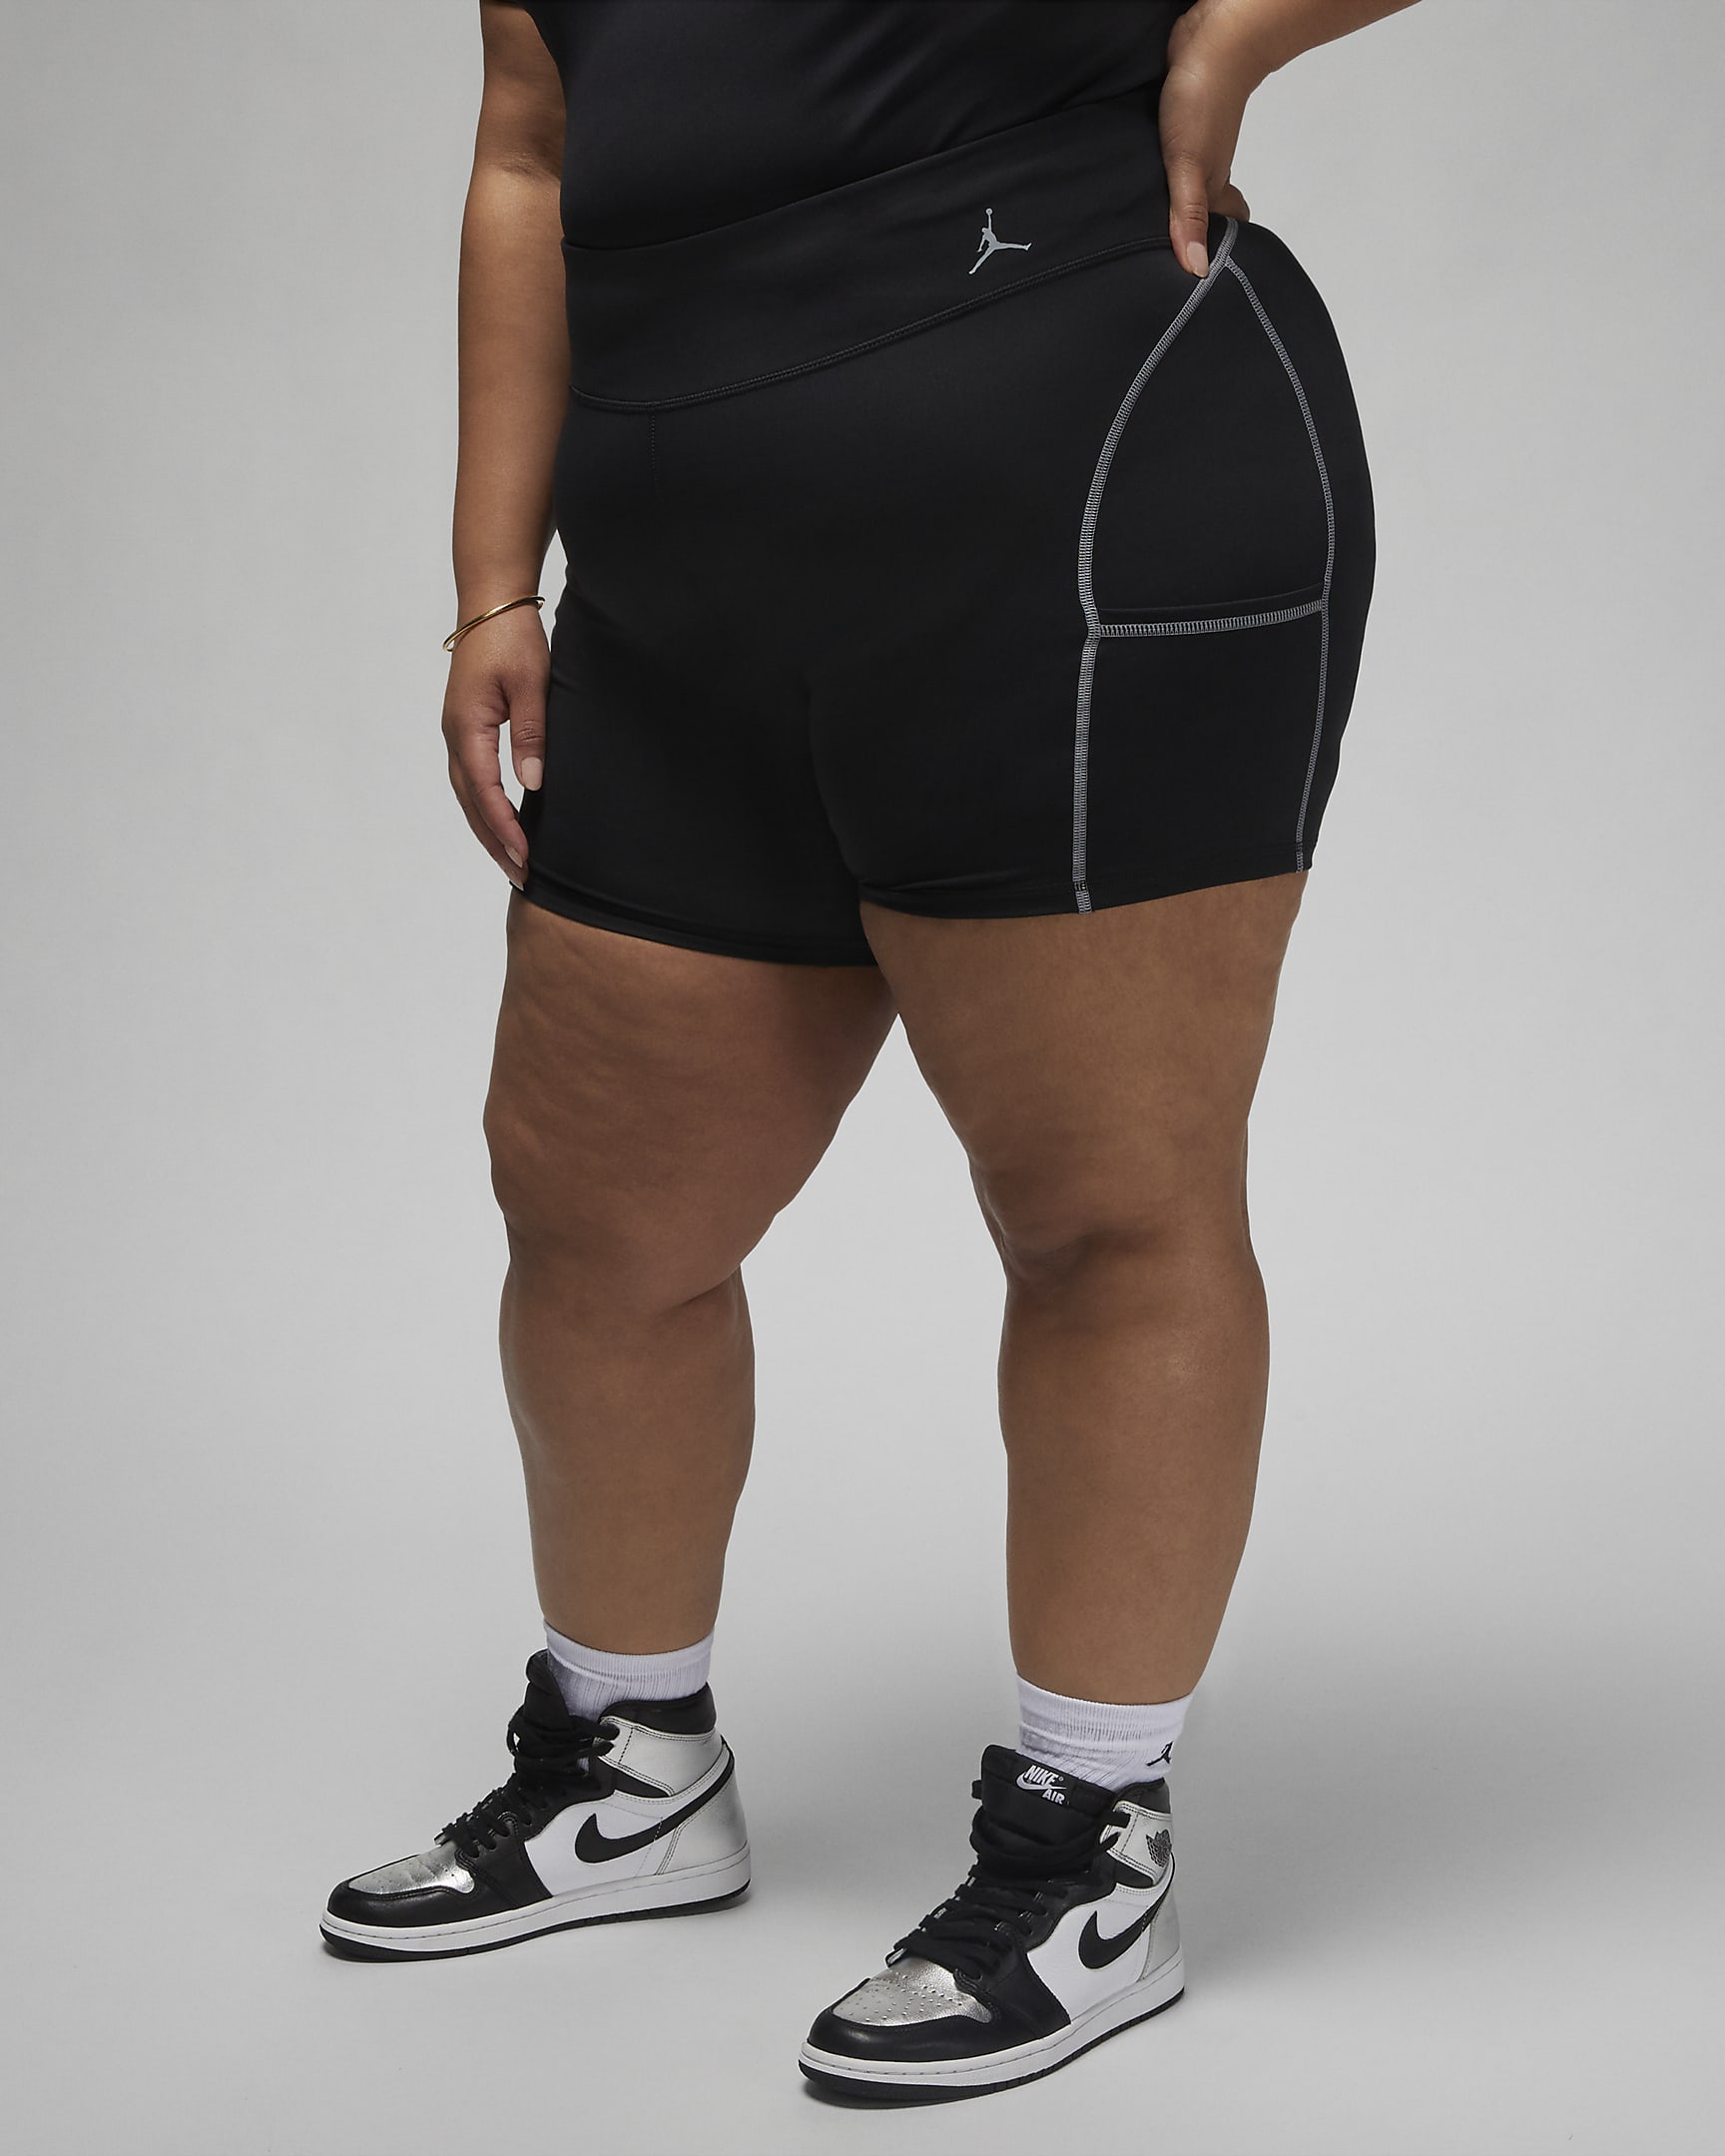 Jordan Sport Women's Shorts (Plus Size). Nike.com